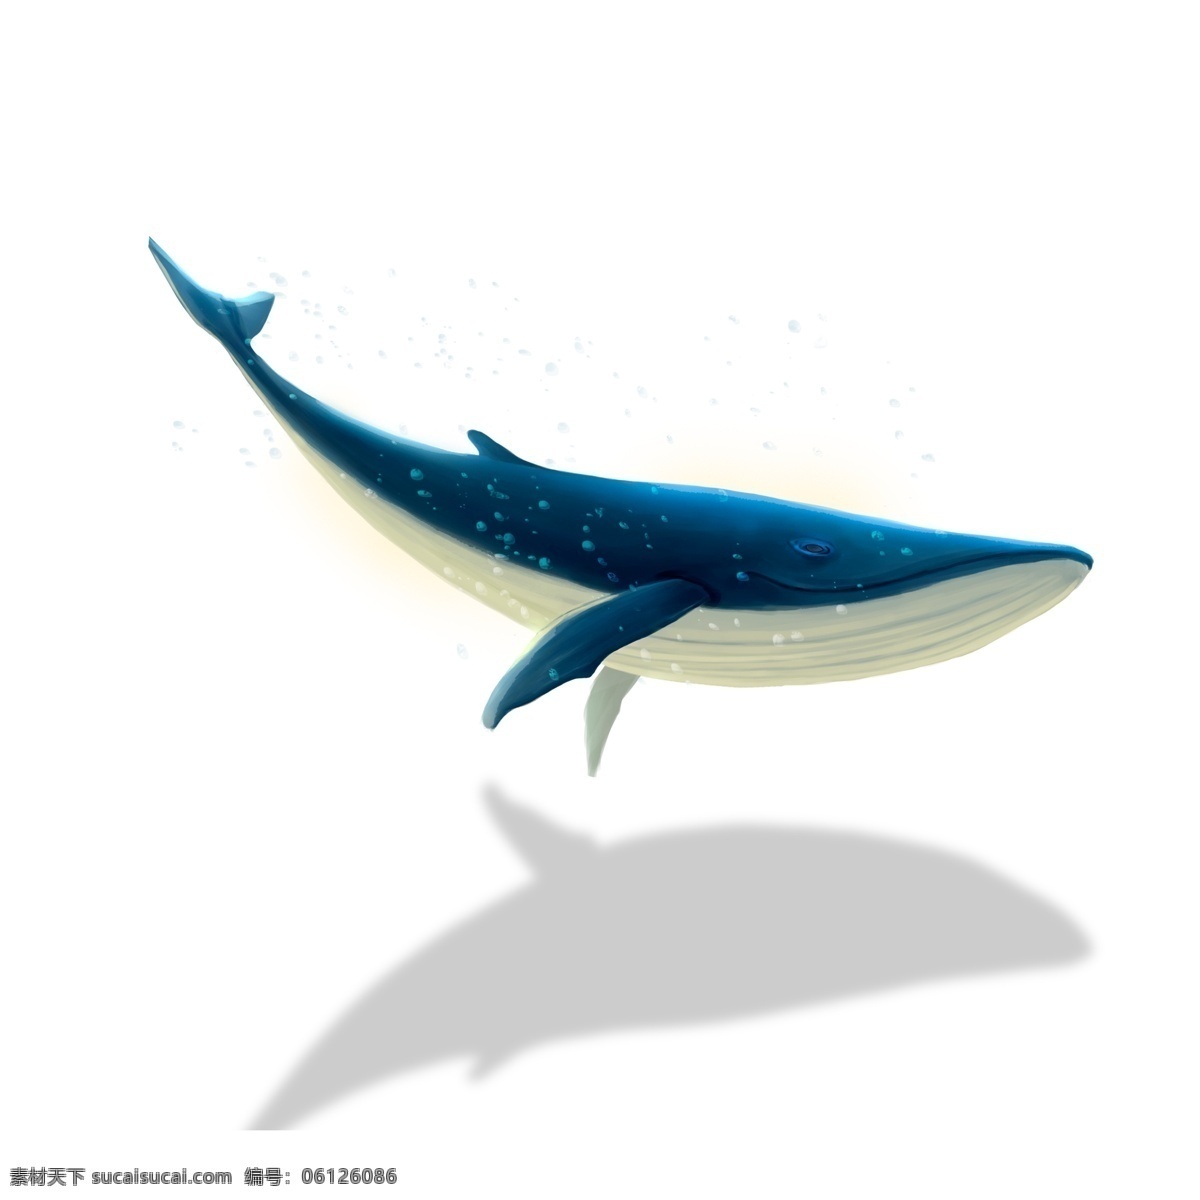 蓝色 鲸鱼 图案 元素 鱼 鲨鱼 卡通鲸鱼 蓝鲸 设计元素 手绘 创意元素 手绘元素 psd元素